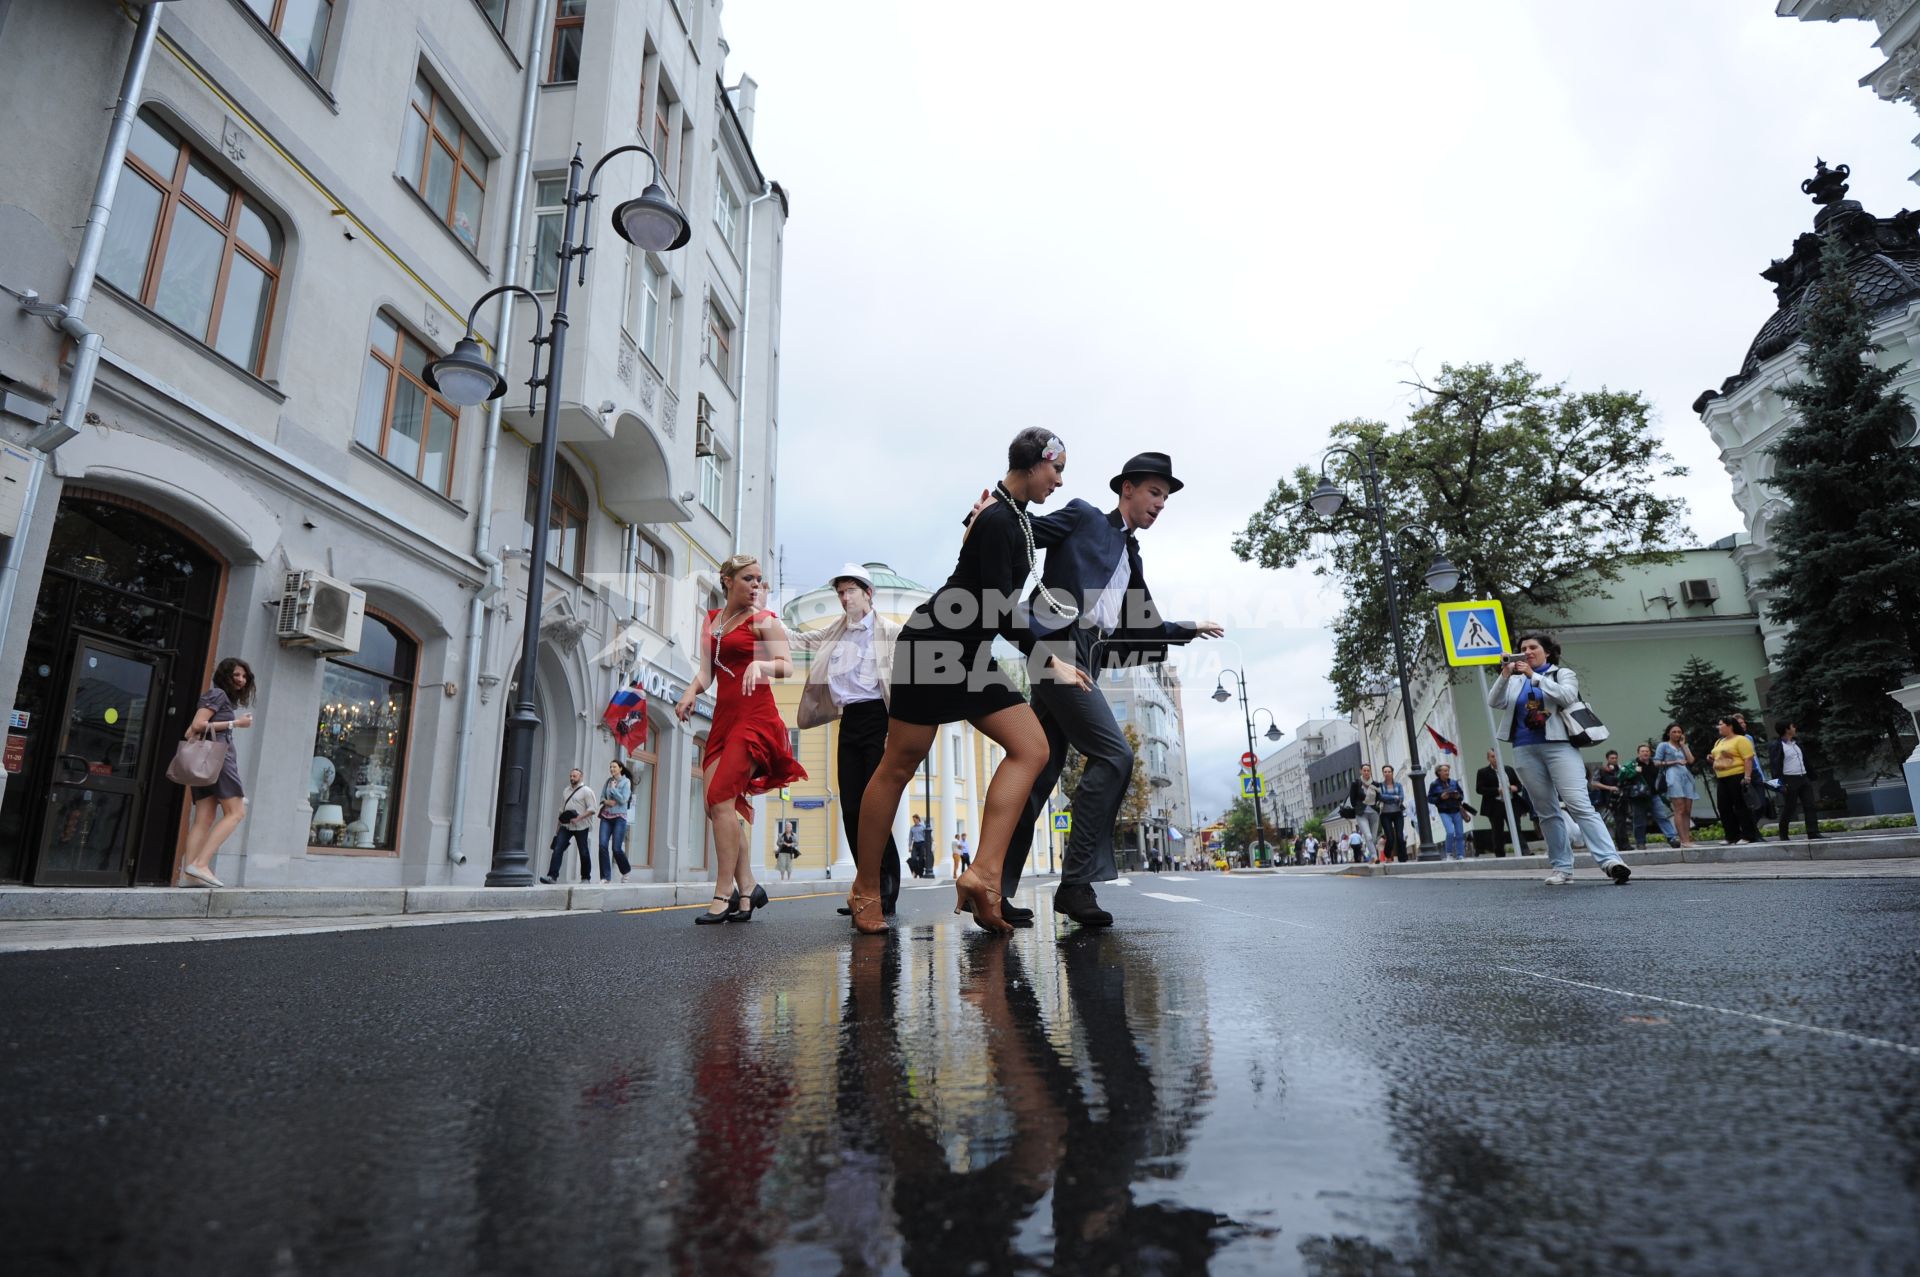 Торжественное открытие пешеходной зоны на улице Пятницкая. На снимке: люди в костюмах времен советской России 30-40 годов танцуют чарльстон.